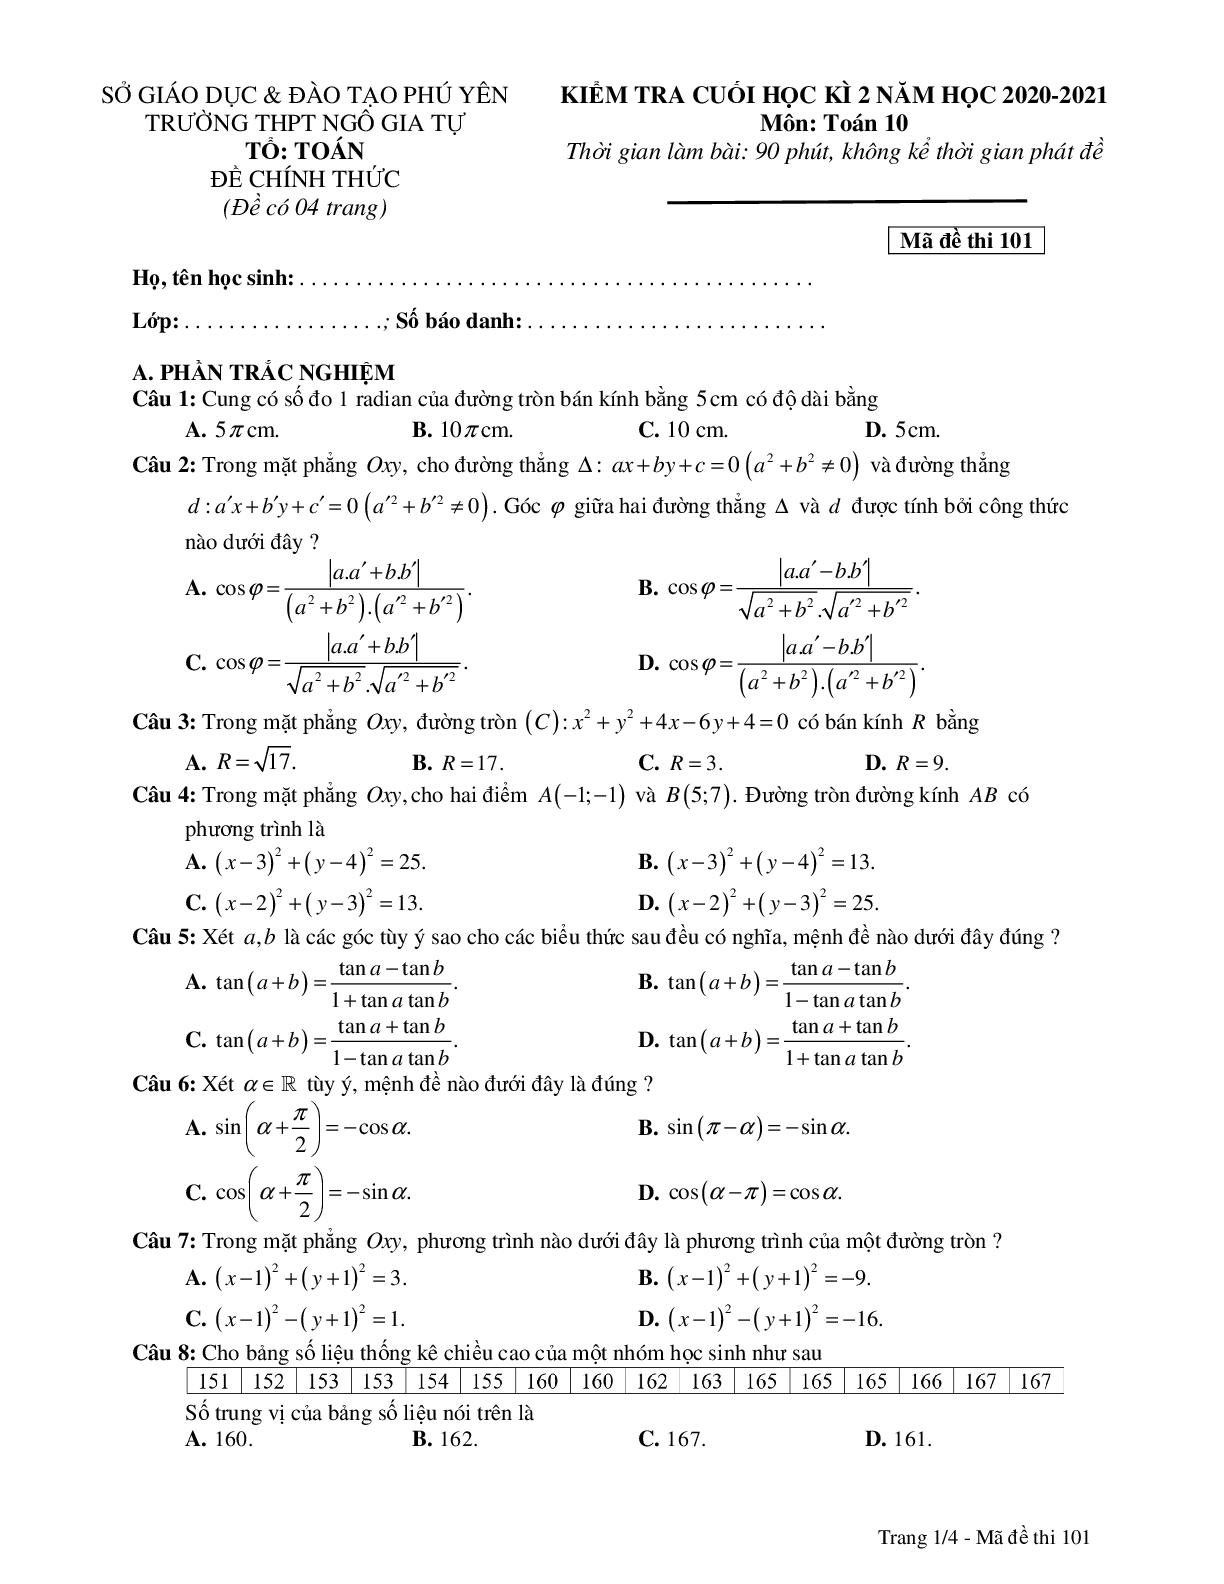 Đề thi học kì 2 môn toán 10 trường THPT Ngô Gia Tự năm học 2020-2021 (trang 1)